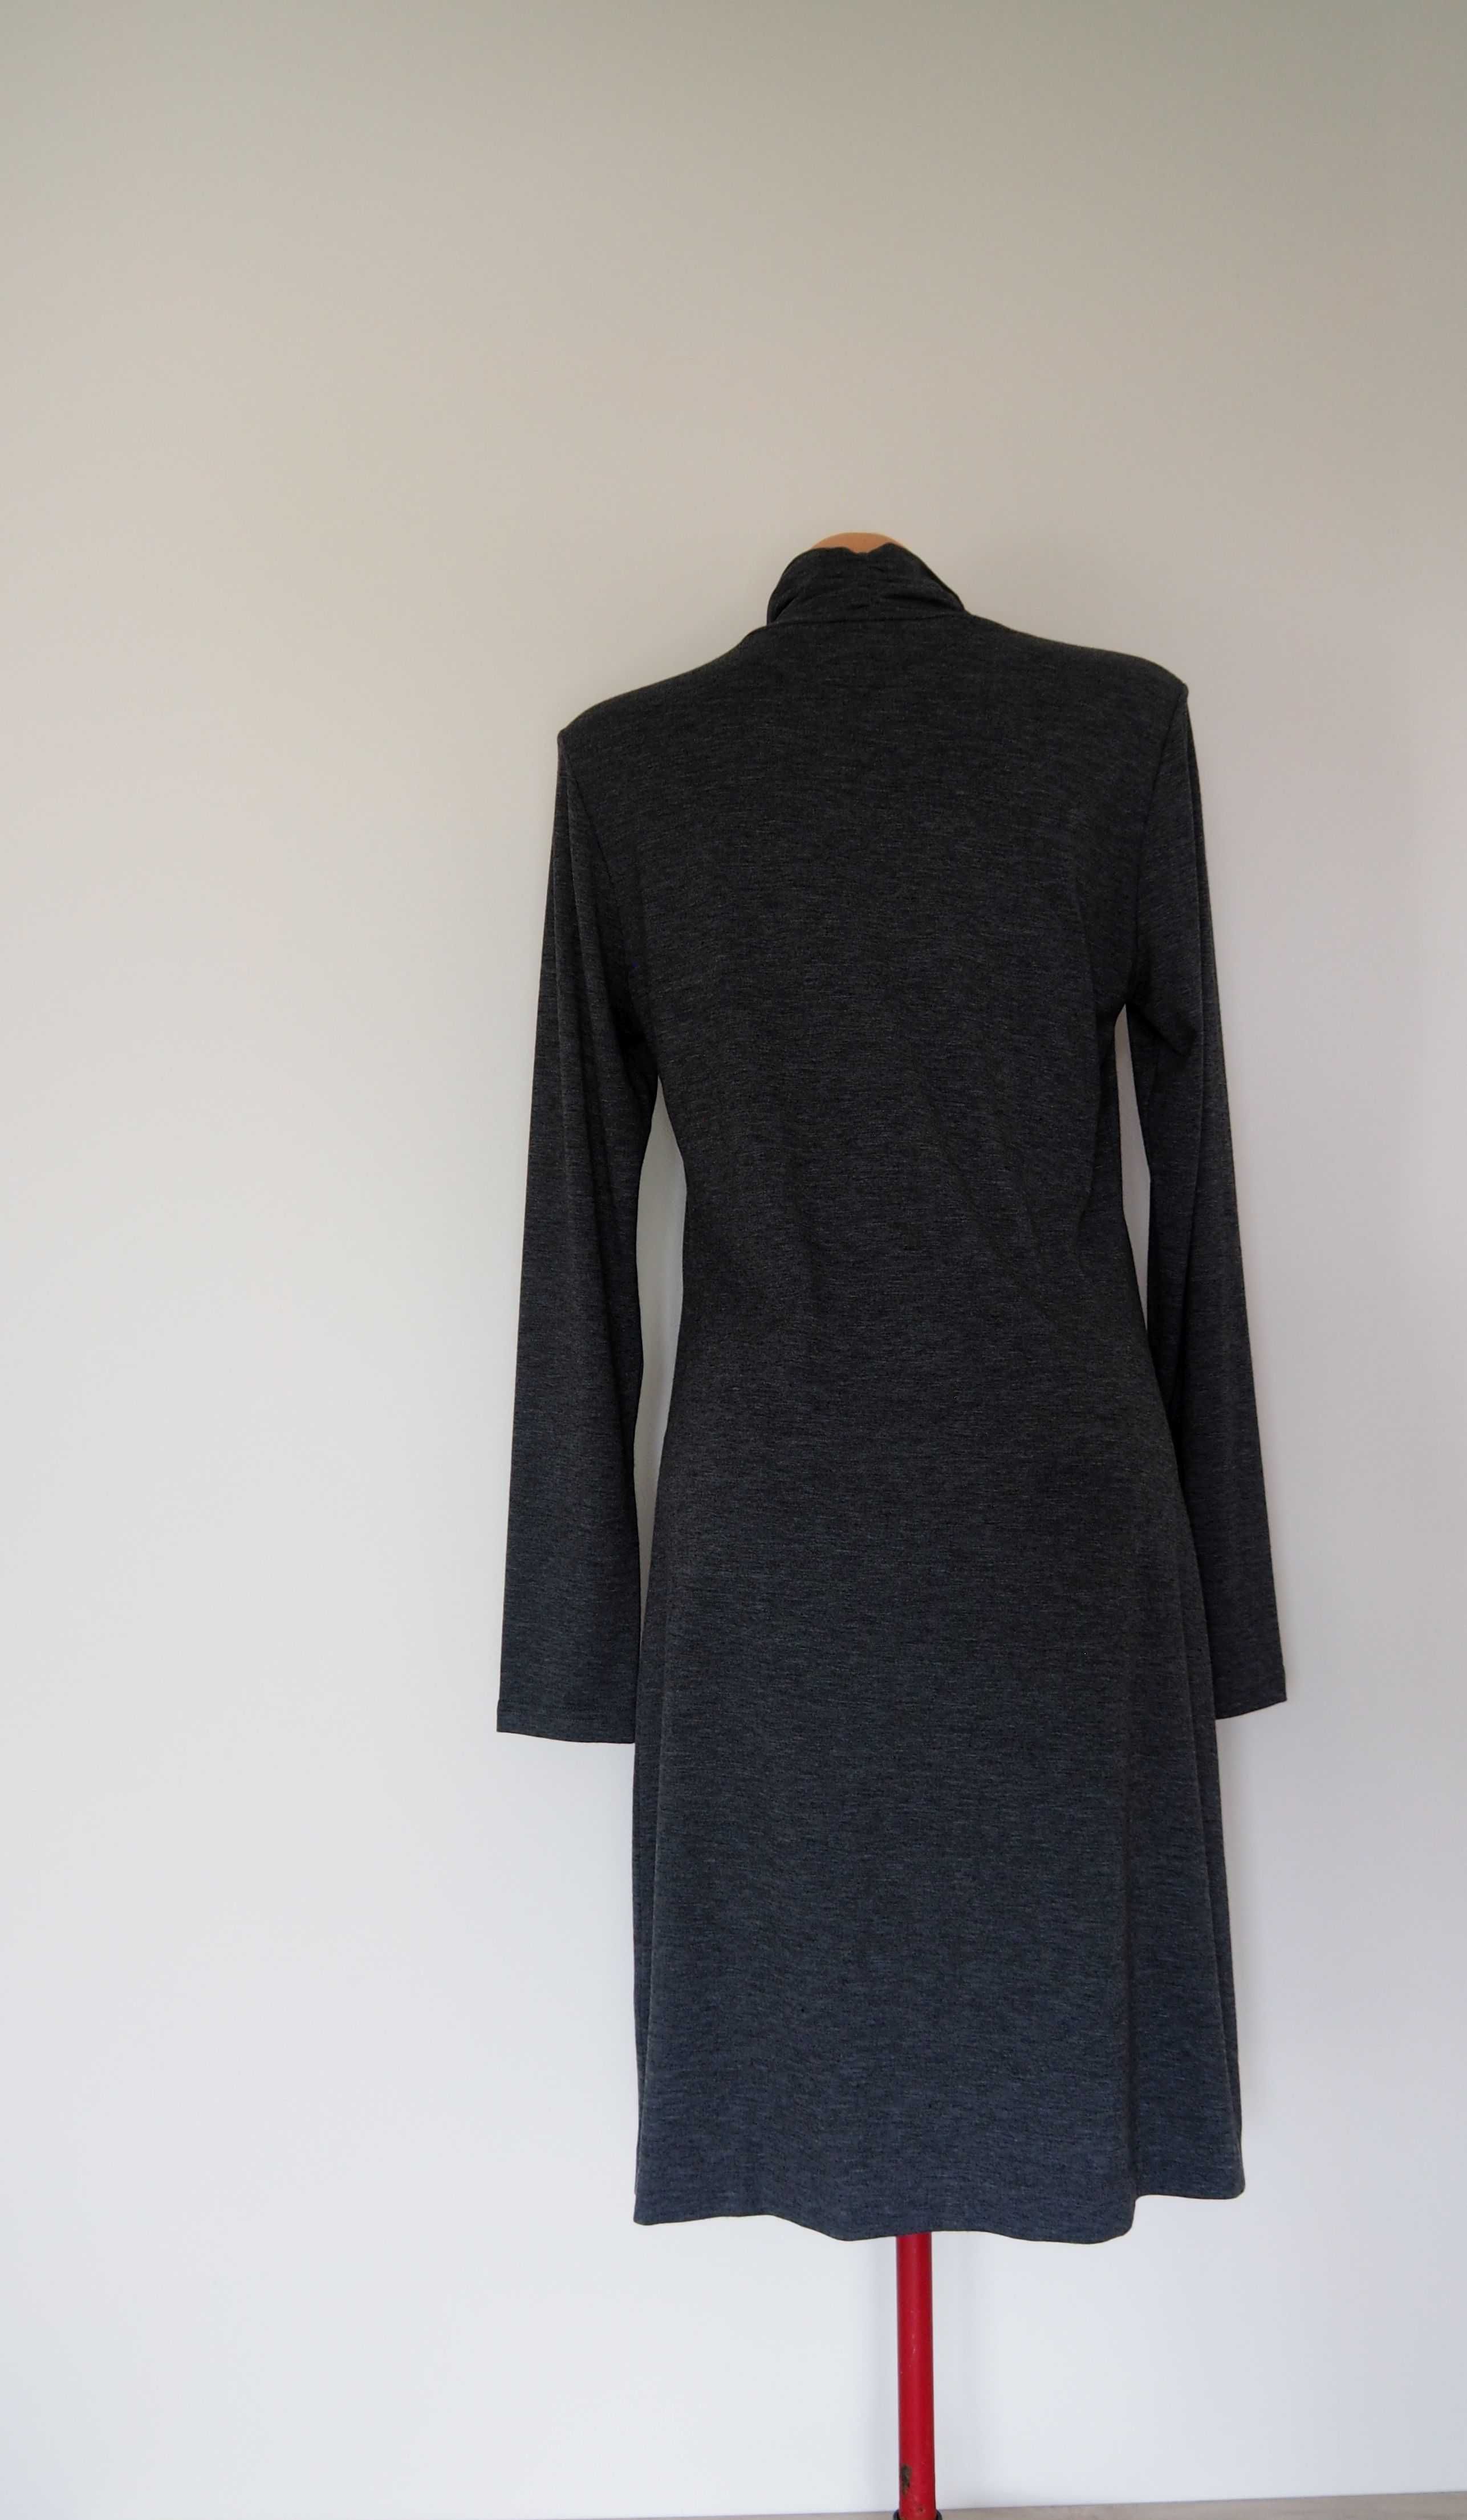 Sukienka dzianinowa, szara, melanż, 36, 38 długi rękaw, Made in Poland